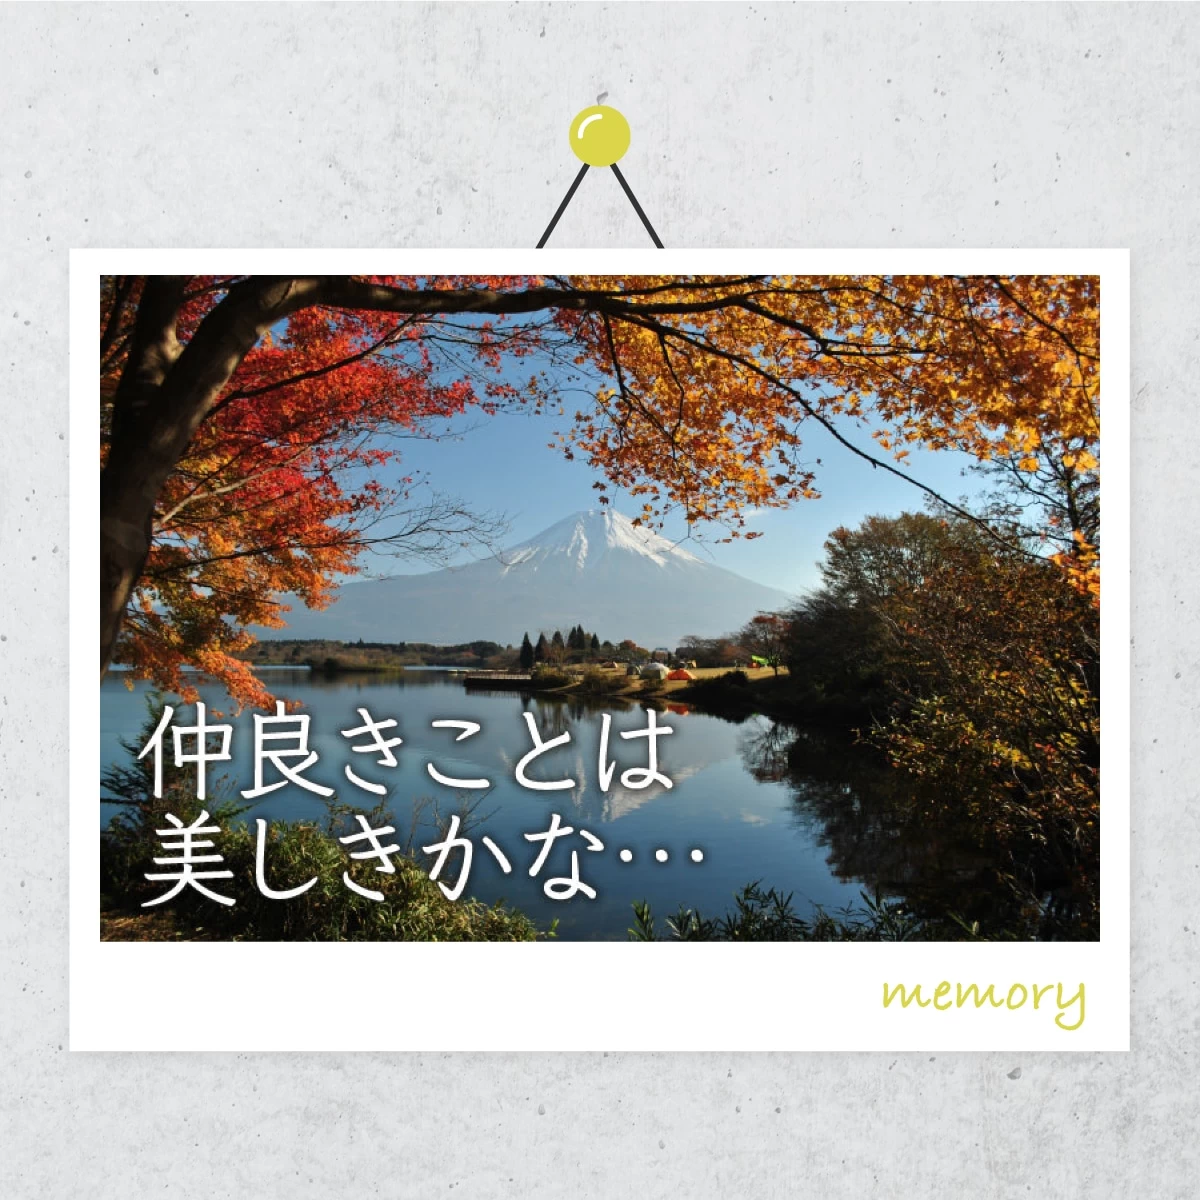 富士五湖の紅葉を楽しむ  夫婦で絶景ドライブ旅